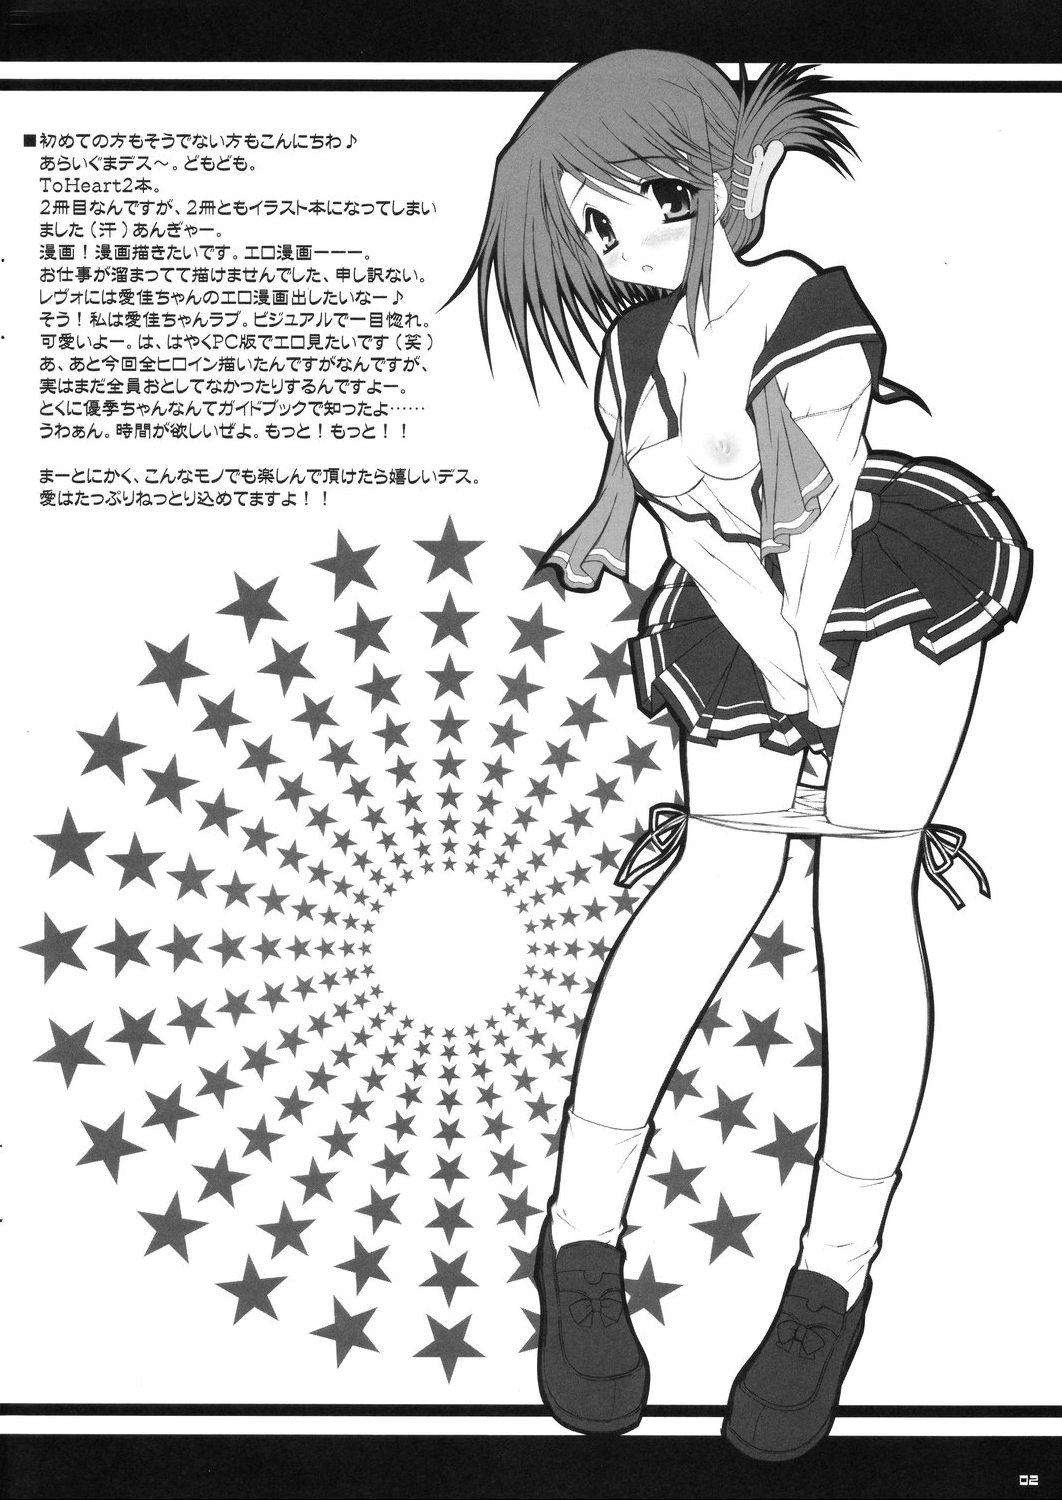 Teen Hardcore Koi no Jumon wa Suki Tokimeki to Kiss - Toheart2 Peludo - Page 2